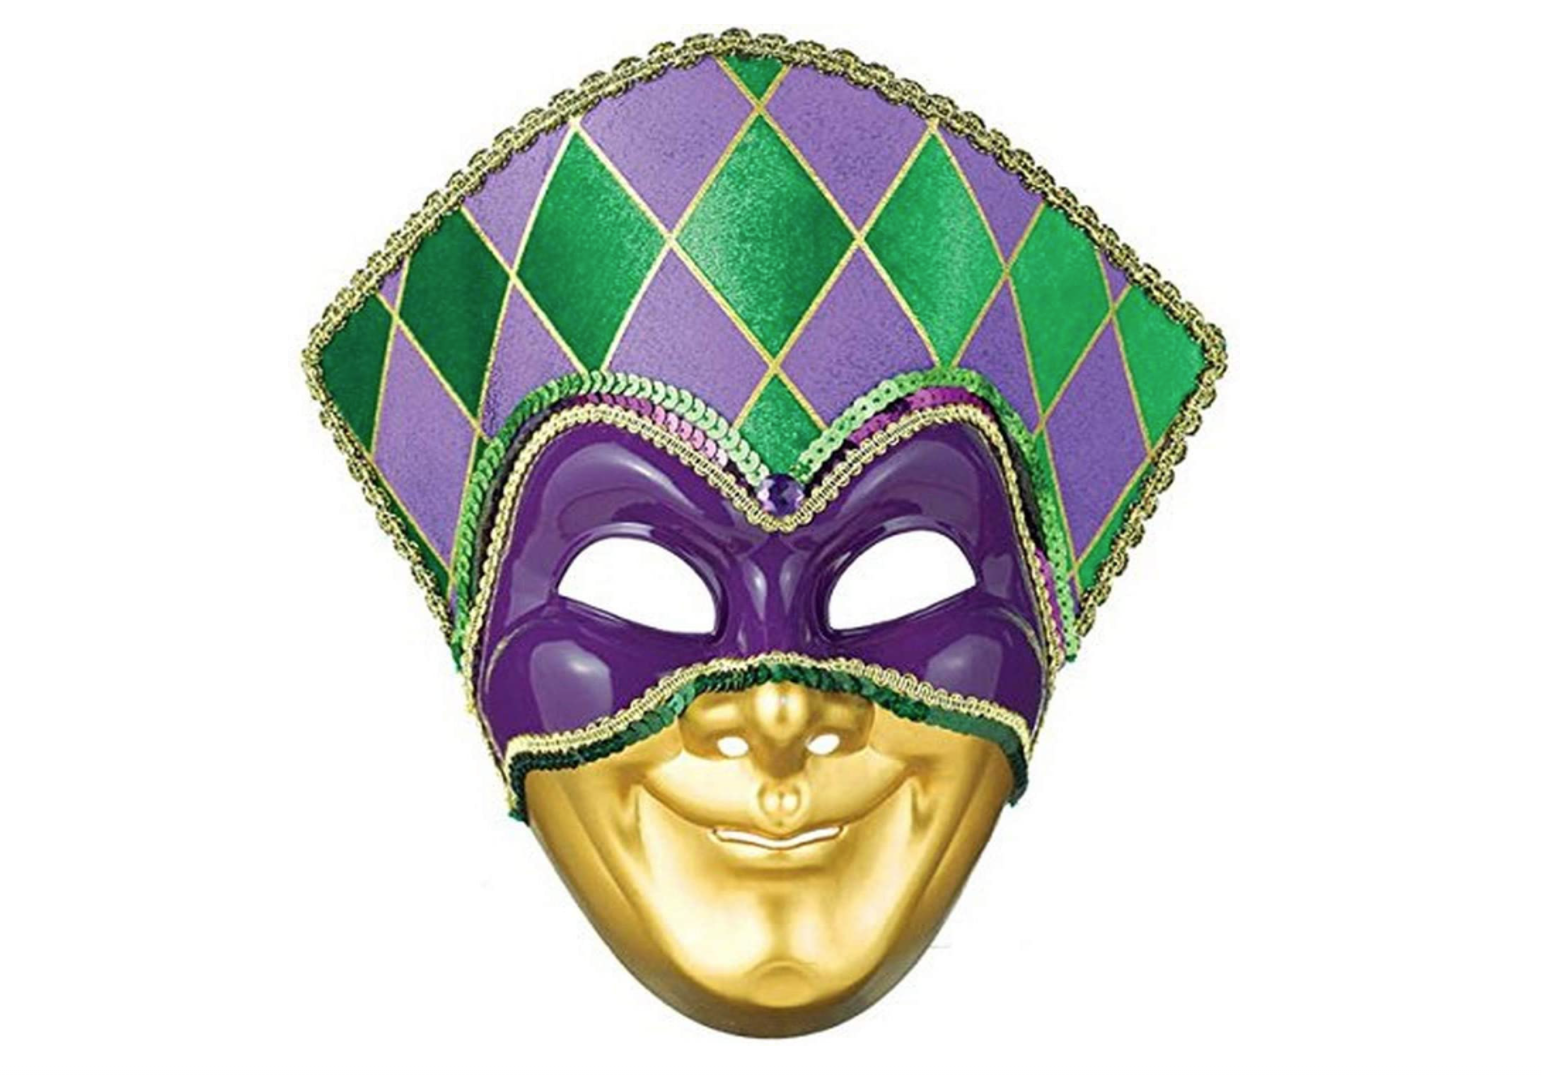 Sequin Mardi Gras Masks Rhode Island Noveltym 